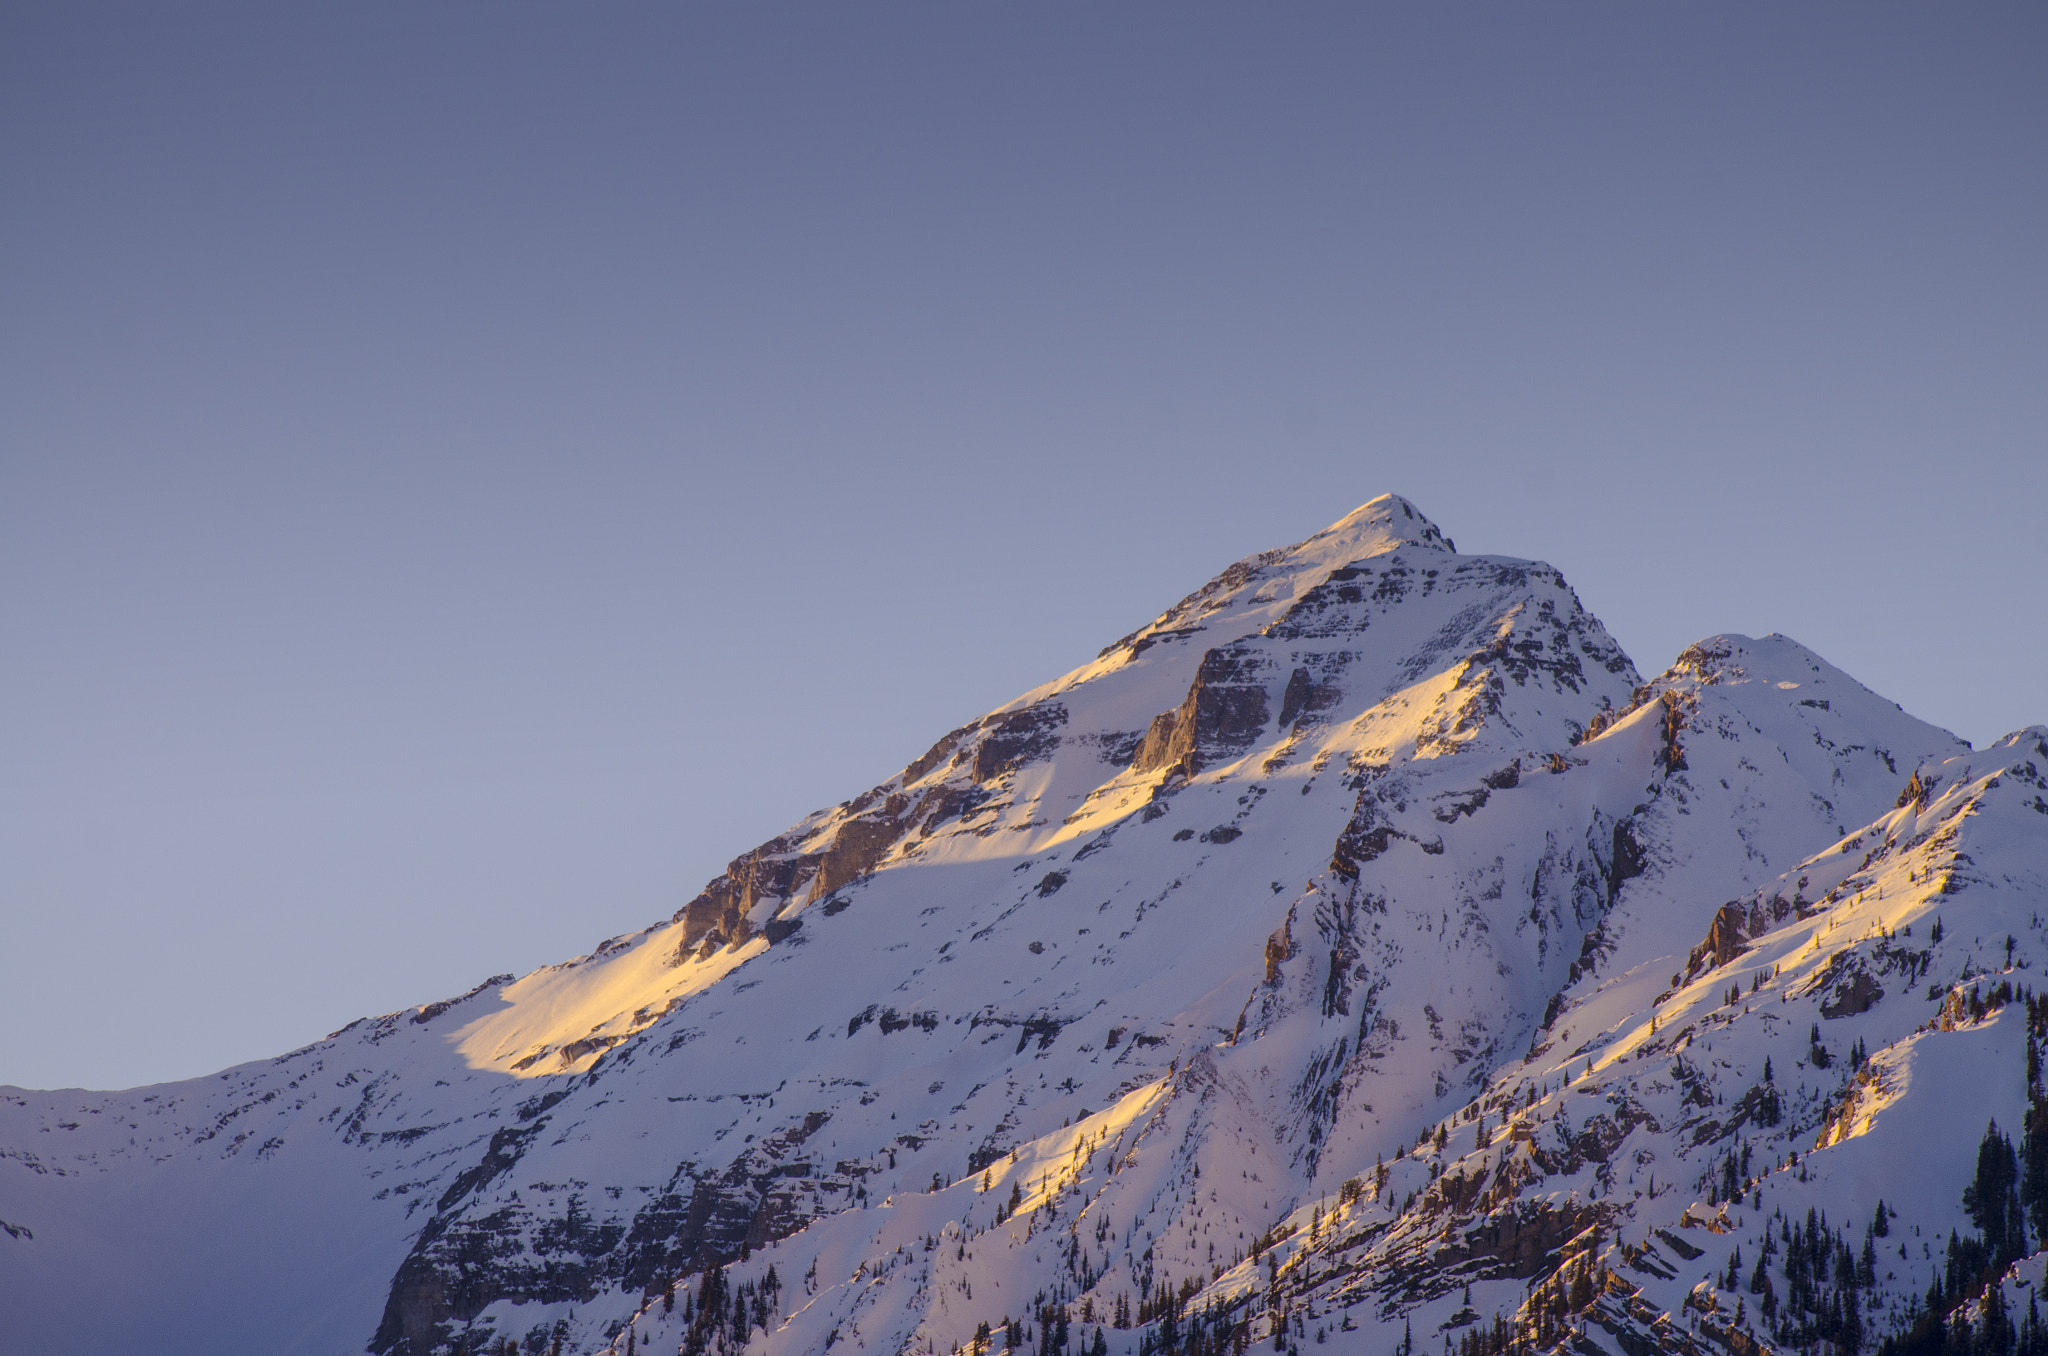 AF Nikkor 70-210mm f/4-5.6D sample photo. Mountain landscapes photography